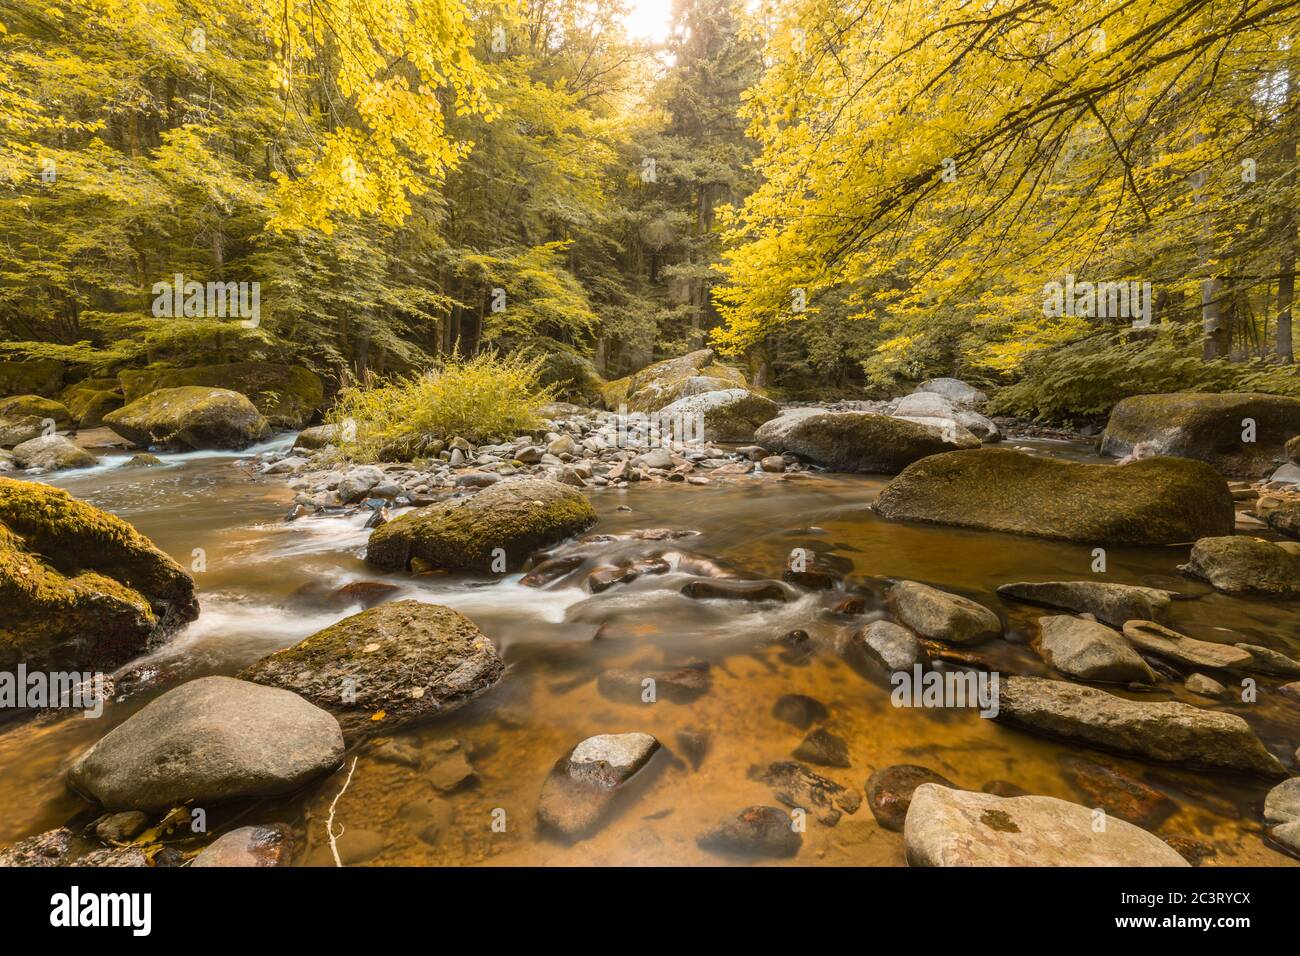 Herbstlicher Wald, mit Moos bewachsene Felsen, abgefallene Blätter. Bergfluss mit Wasserfällen im Herbst. Herbstfarben, ruhige Naturlandschaft Stockfoto